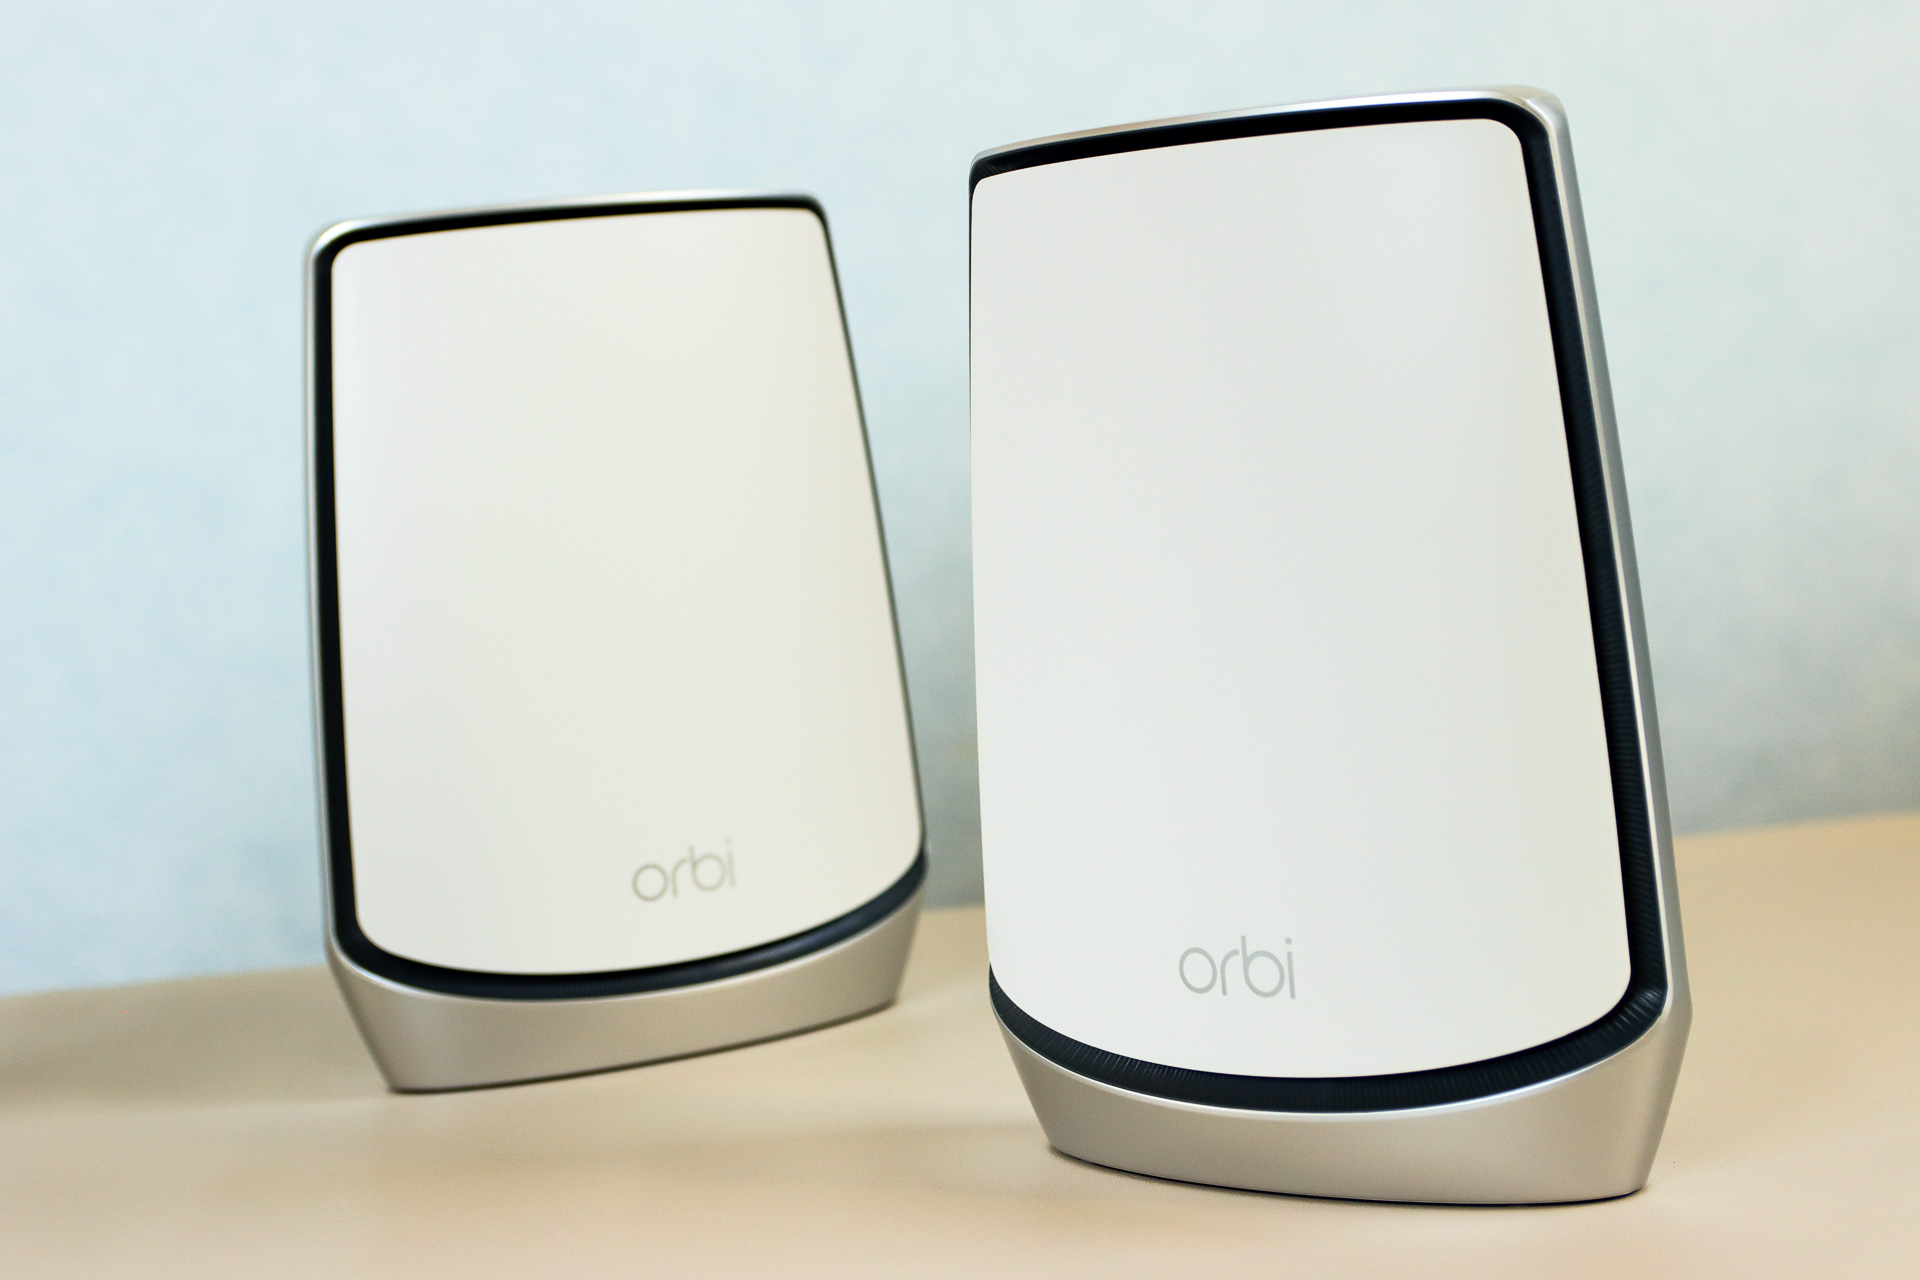 読者の「テレワークで自宅のWi-Fi不安定」に「Orbi WiFi 6」を処方してみた【Wi-Fi改善 by NETGEAR】 - INTERNET  Watch